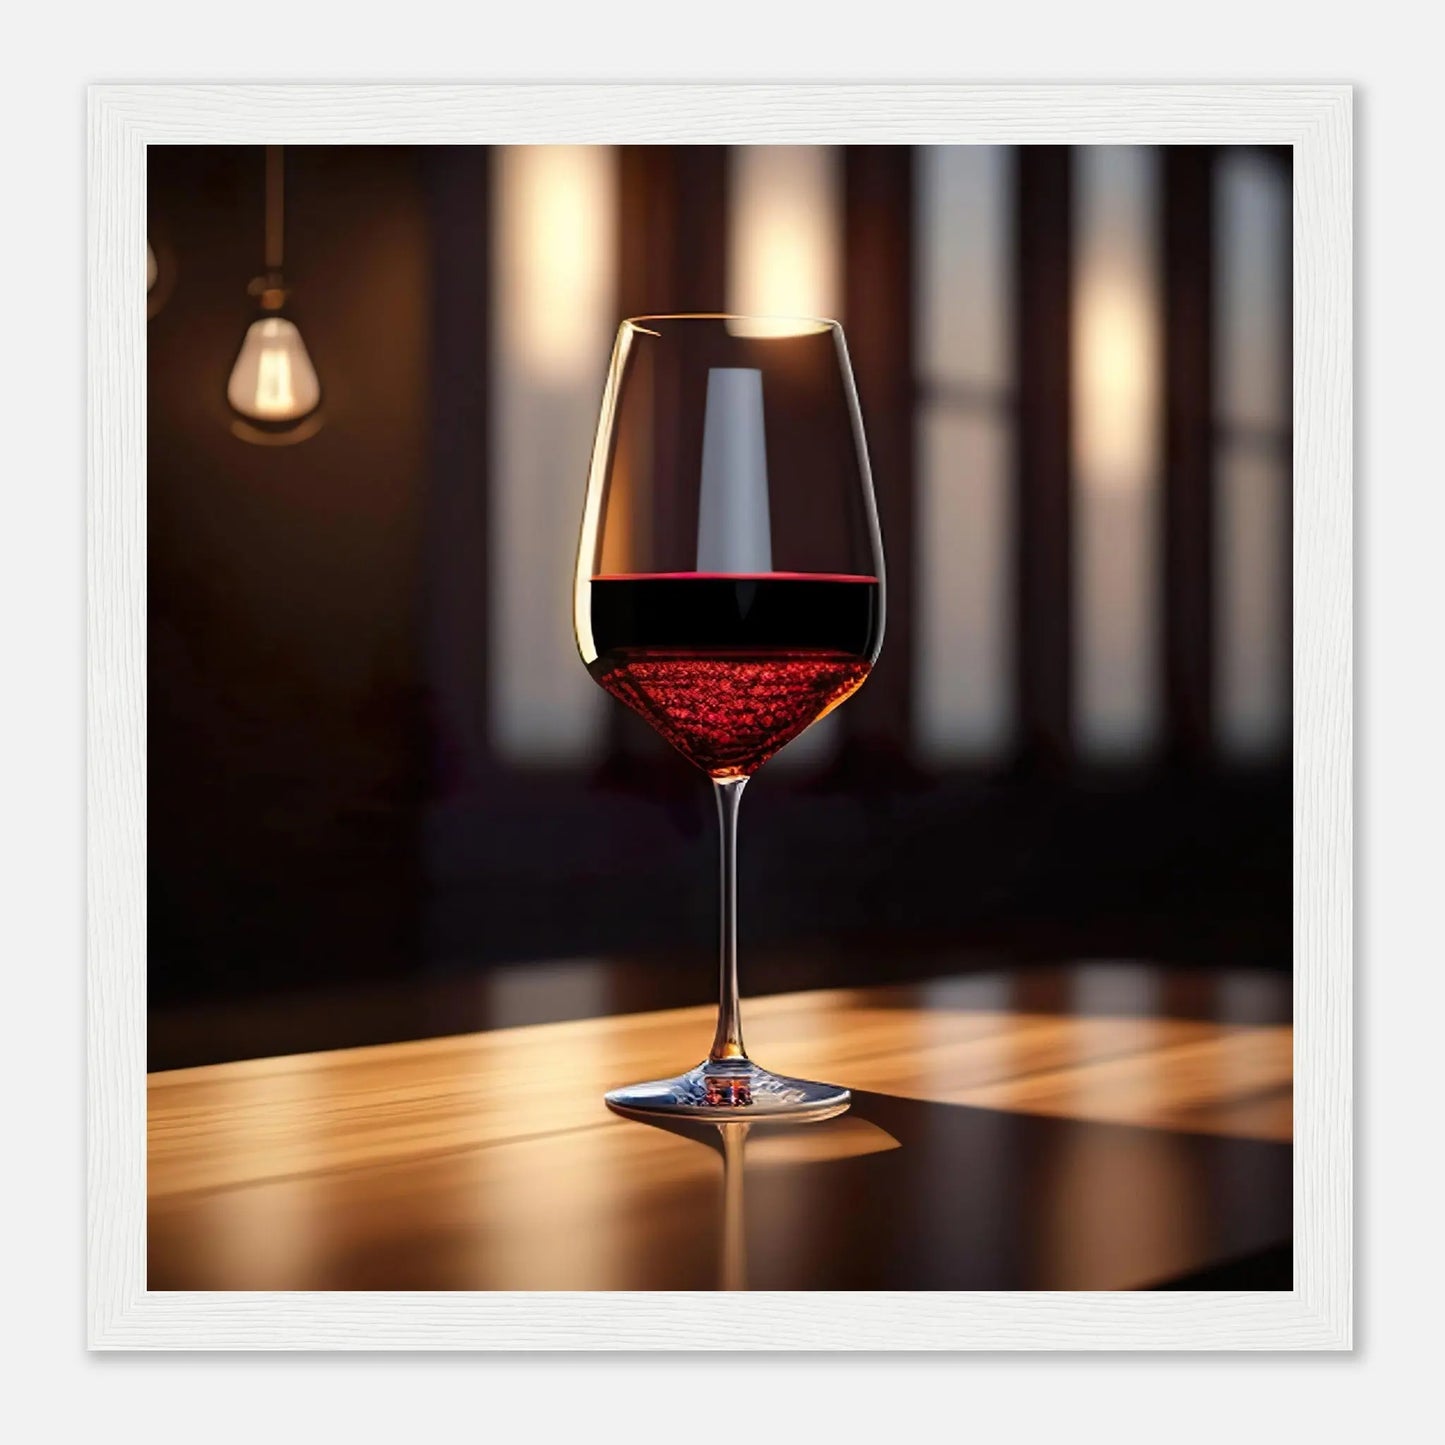 Gerahmtes Premium-Poster - Rotwein im Glas - Foto Stil, KI-Kunst - RolConArt, Kreative Vielfalt, 30x30-cm-12x12-Weißer-Rahmen